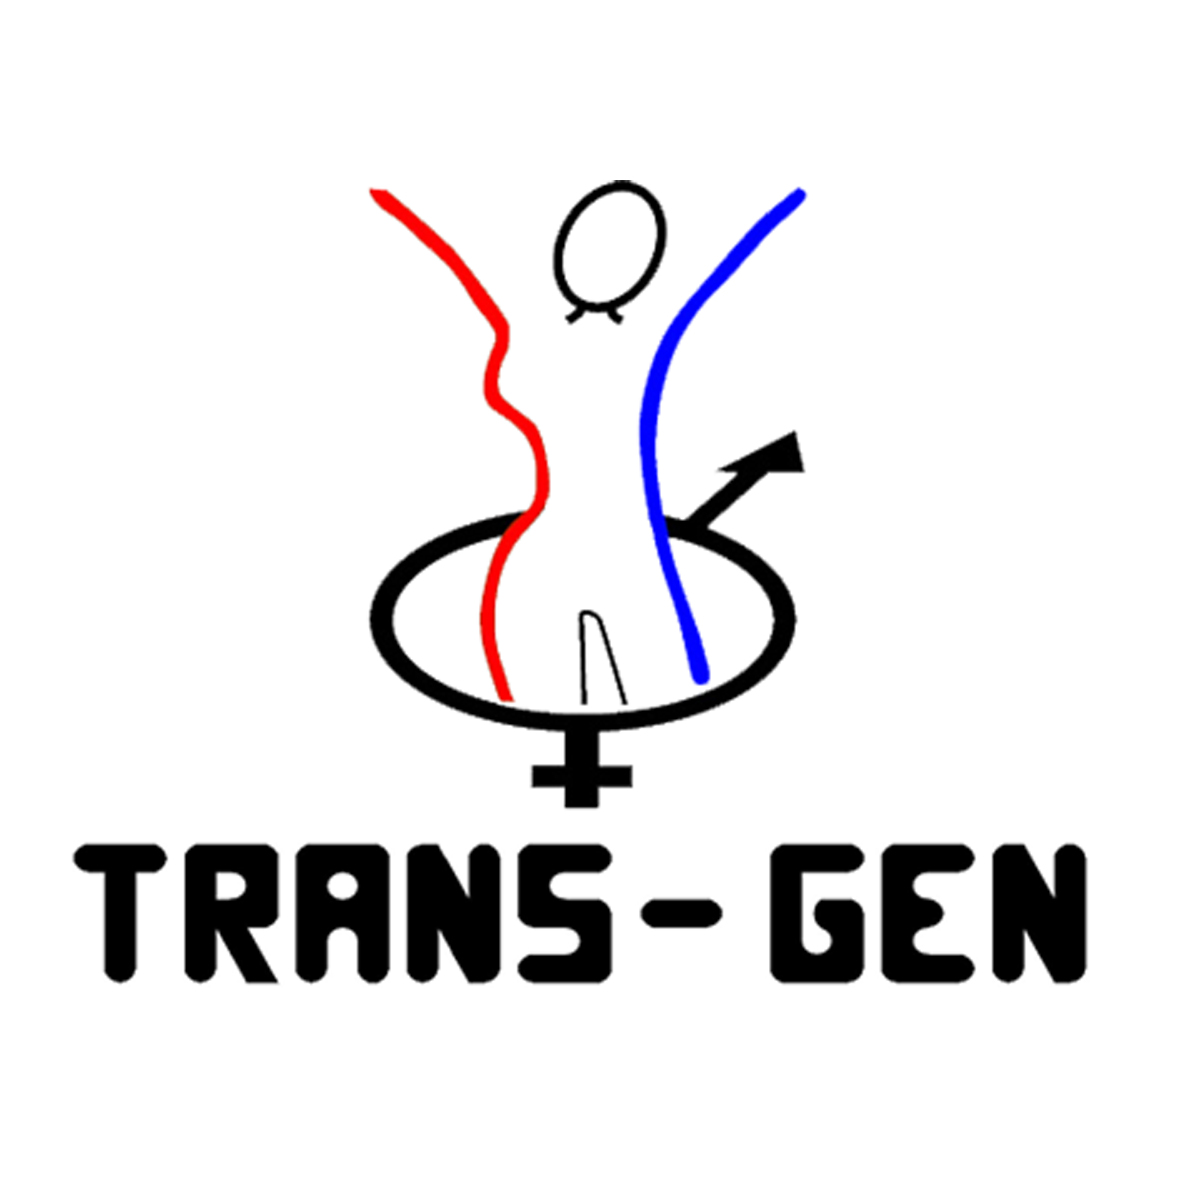 Transgenero Y Transexual